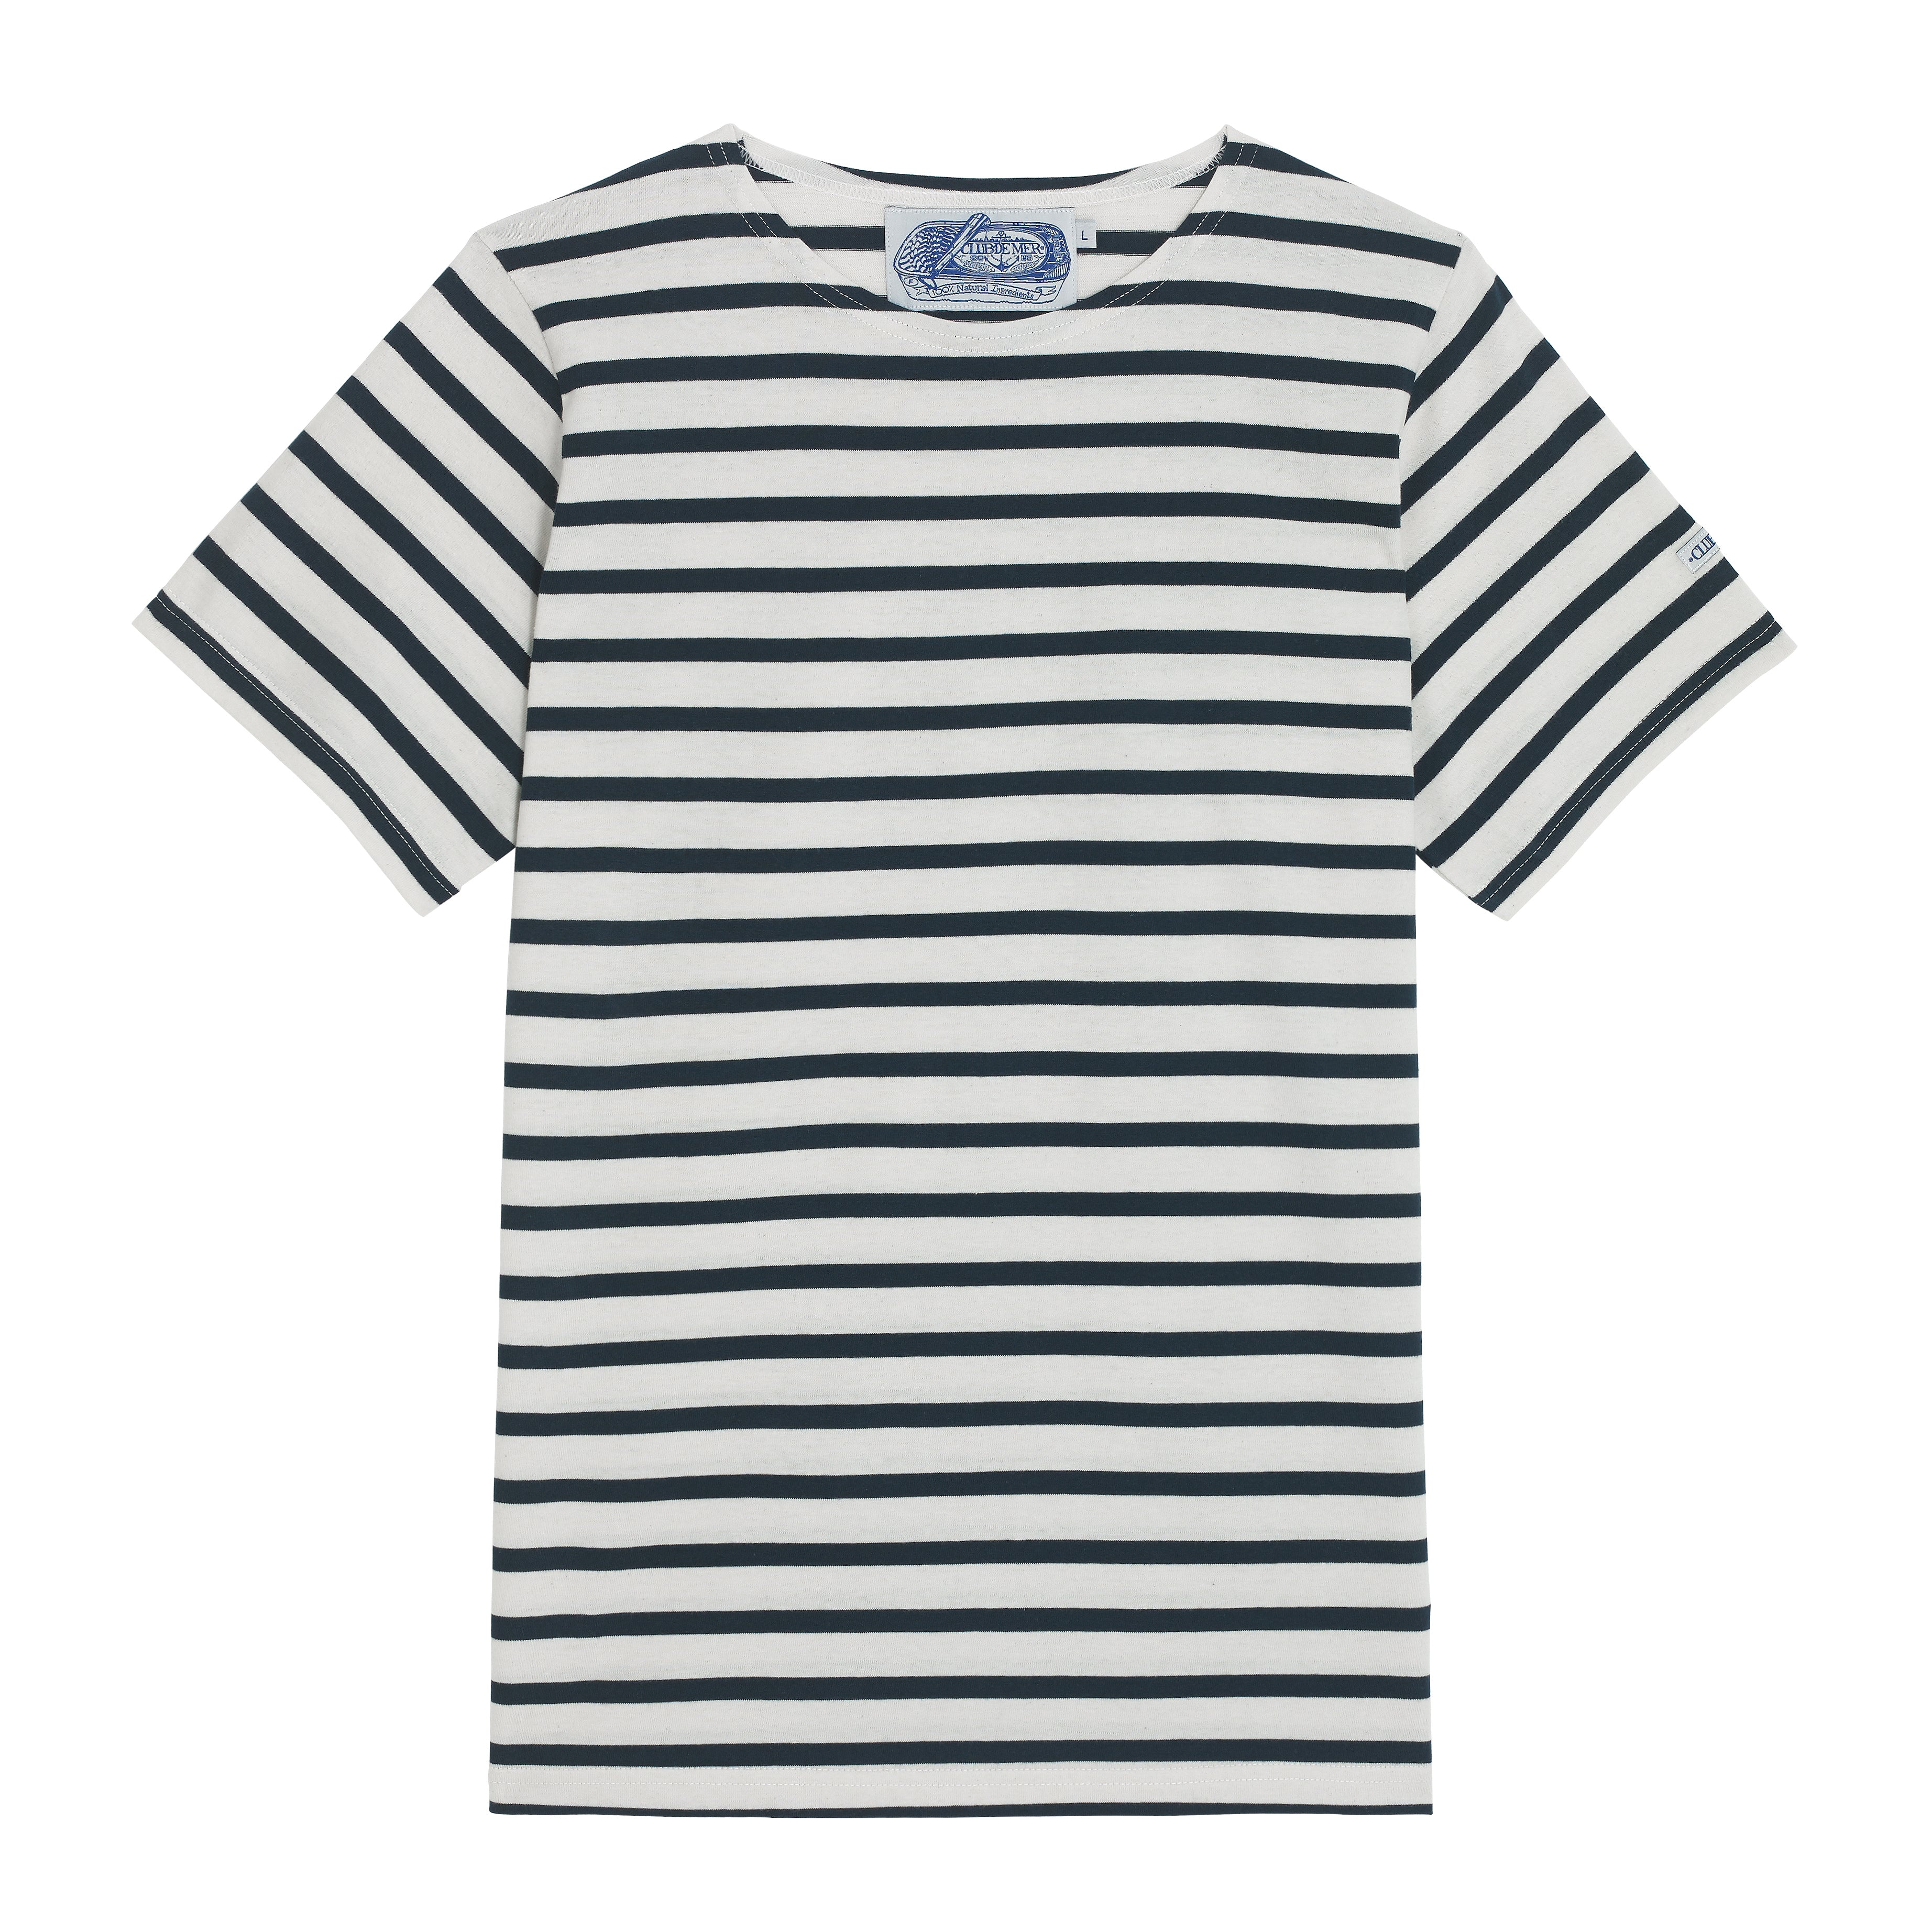 Breton Blue and White Striped Sailor T-Shirt Le T-Shirt – The Breton Shirt Company Ltd